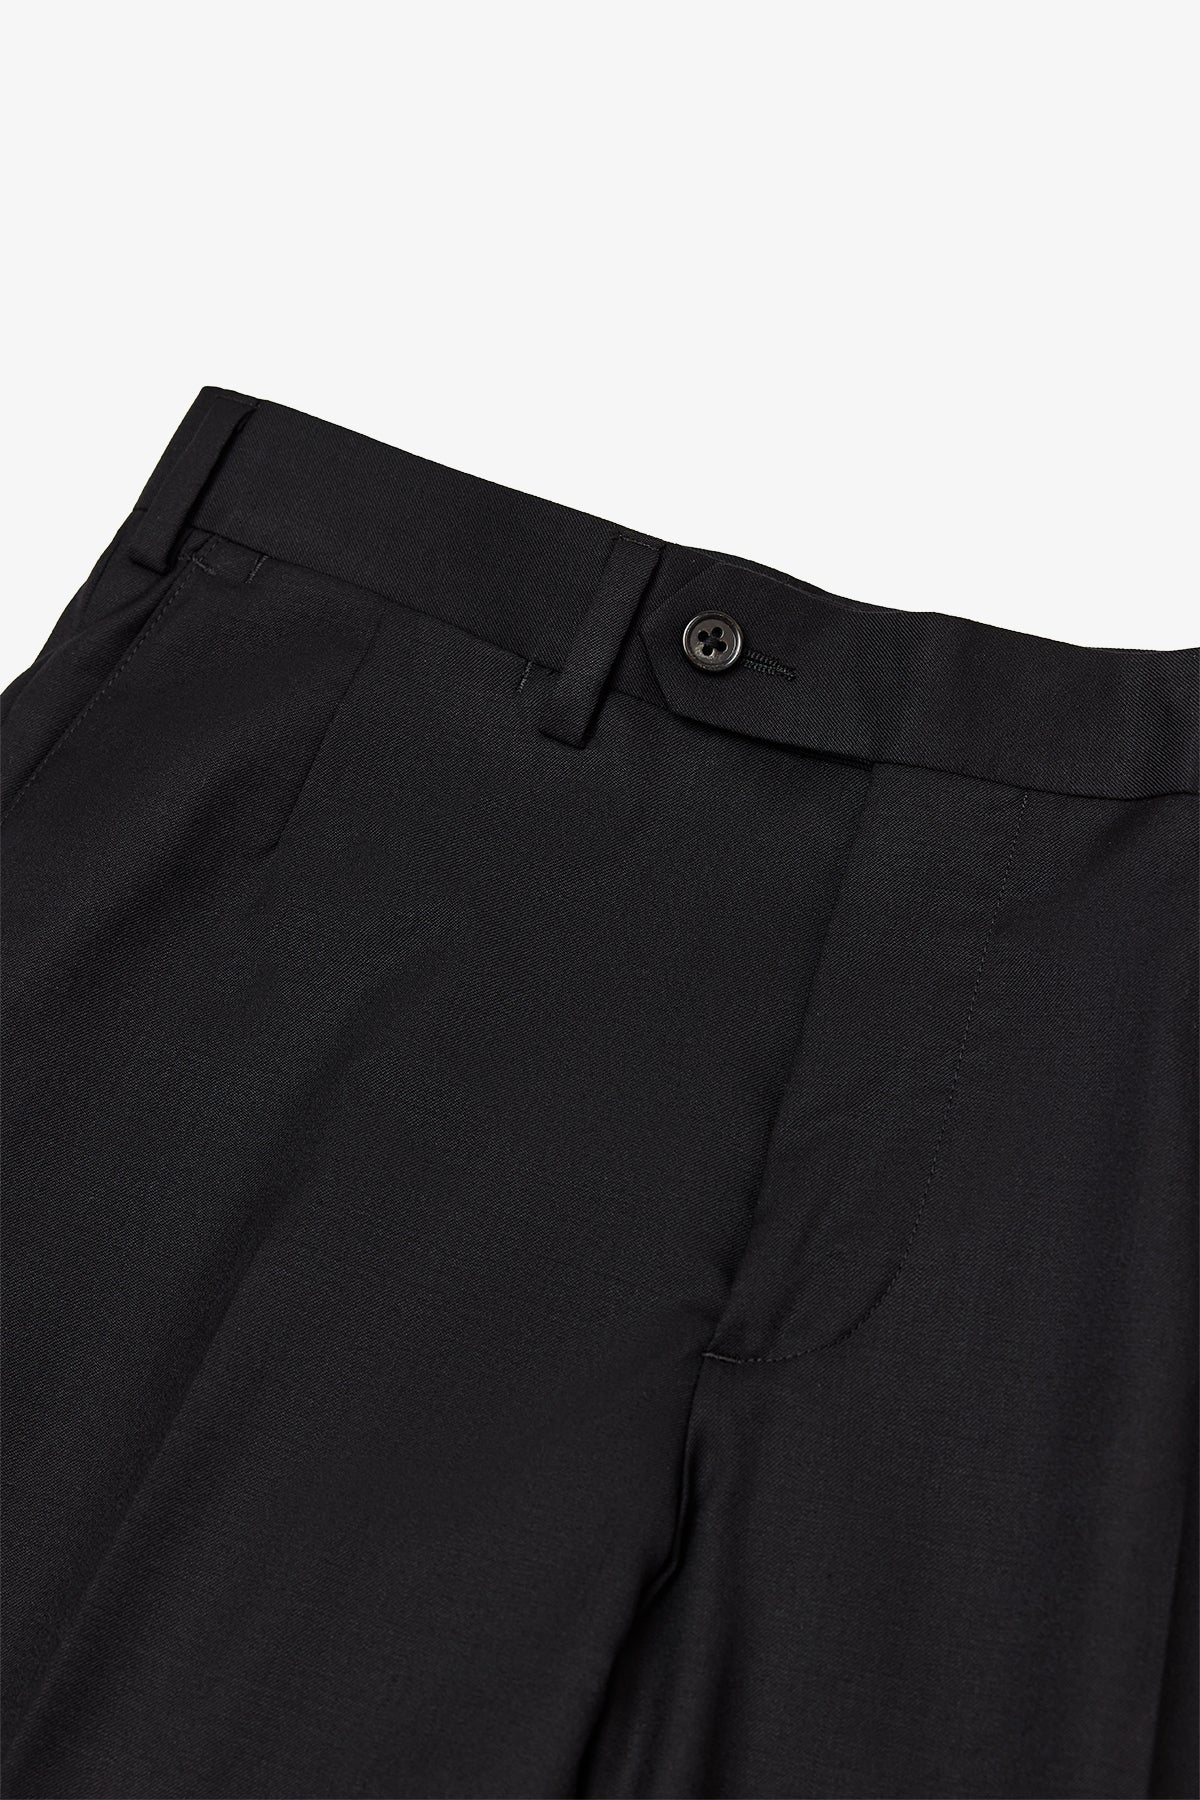 Tives - Black Trouser